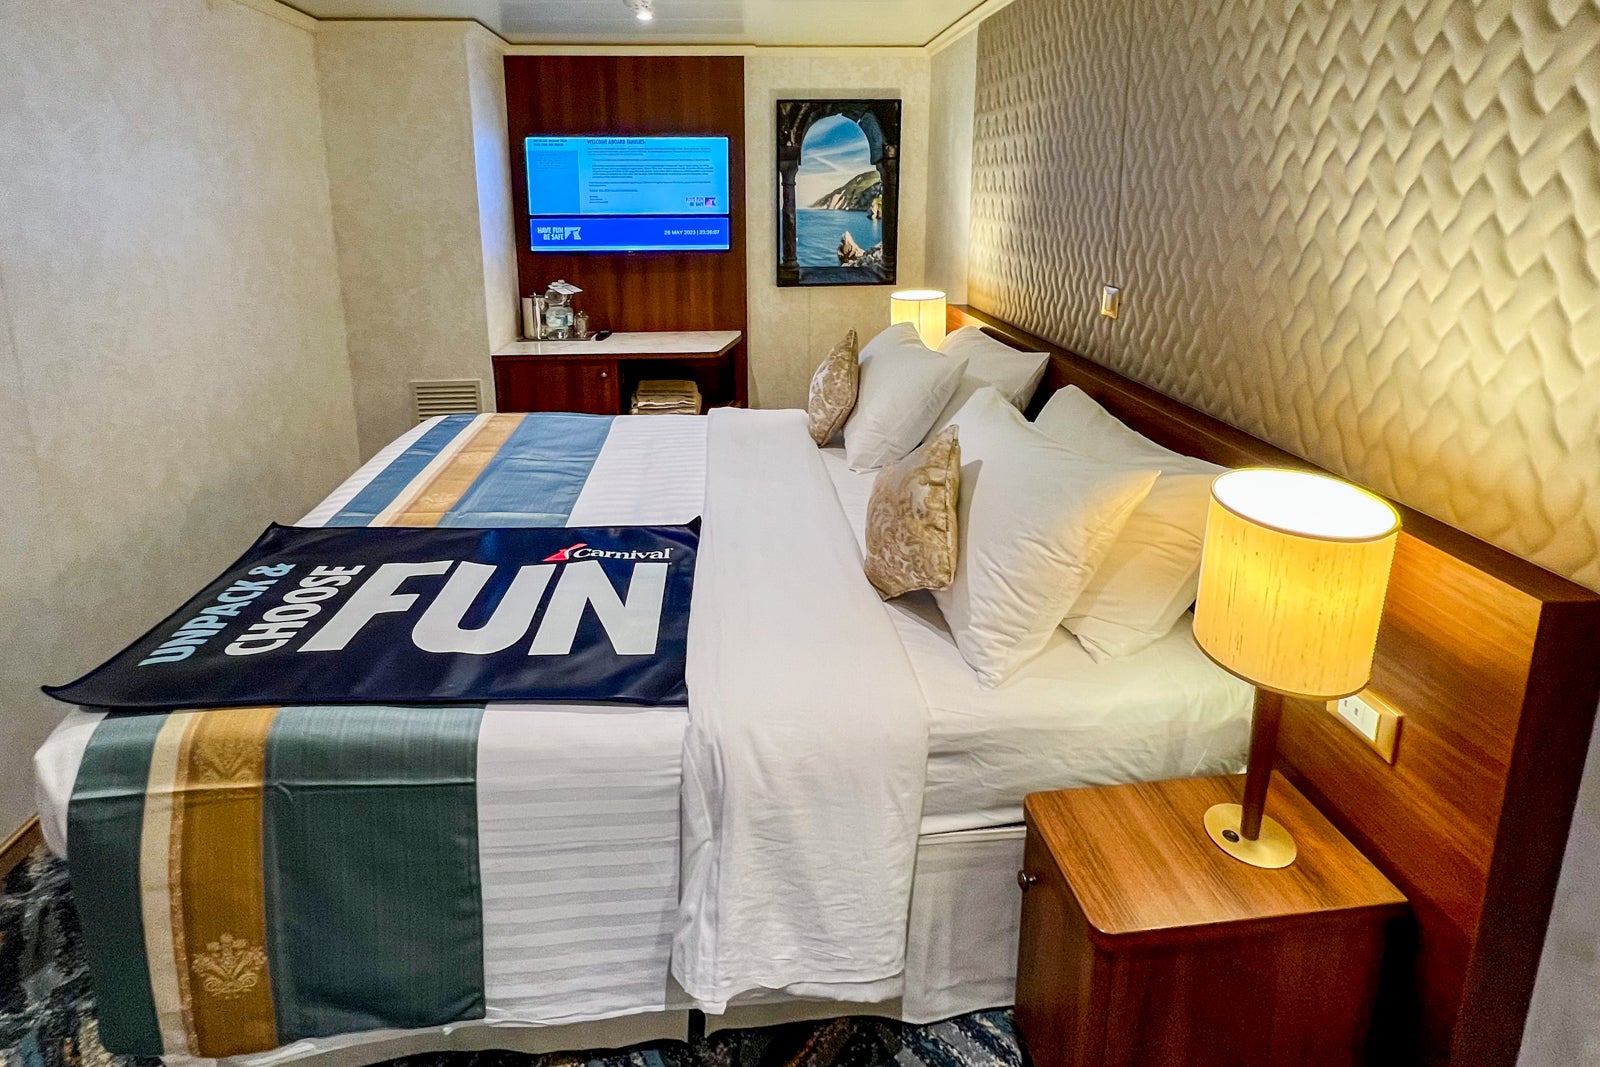 cruise ship cabin lease